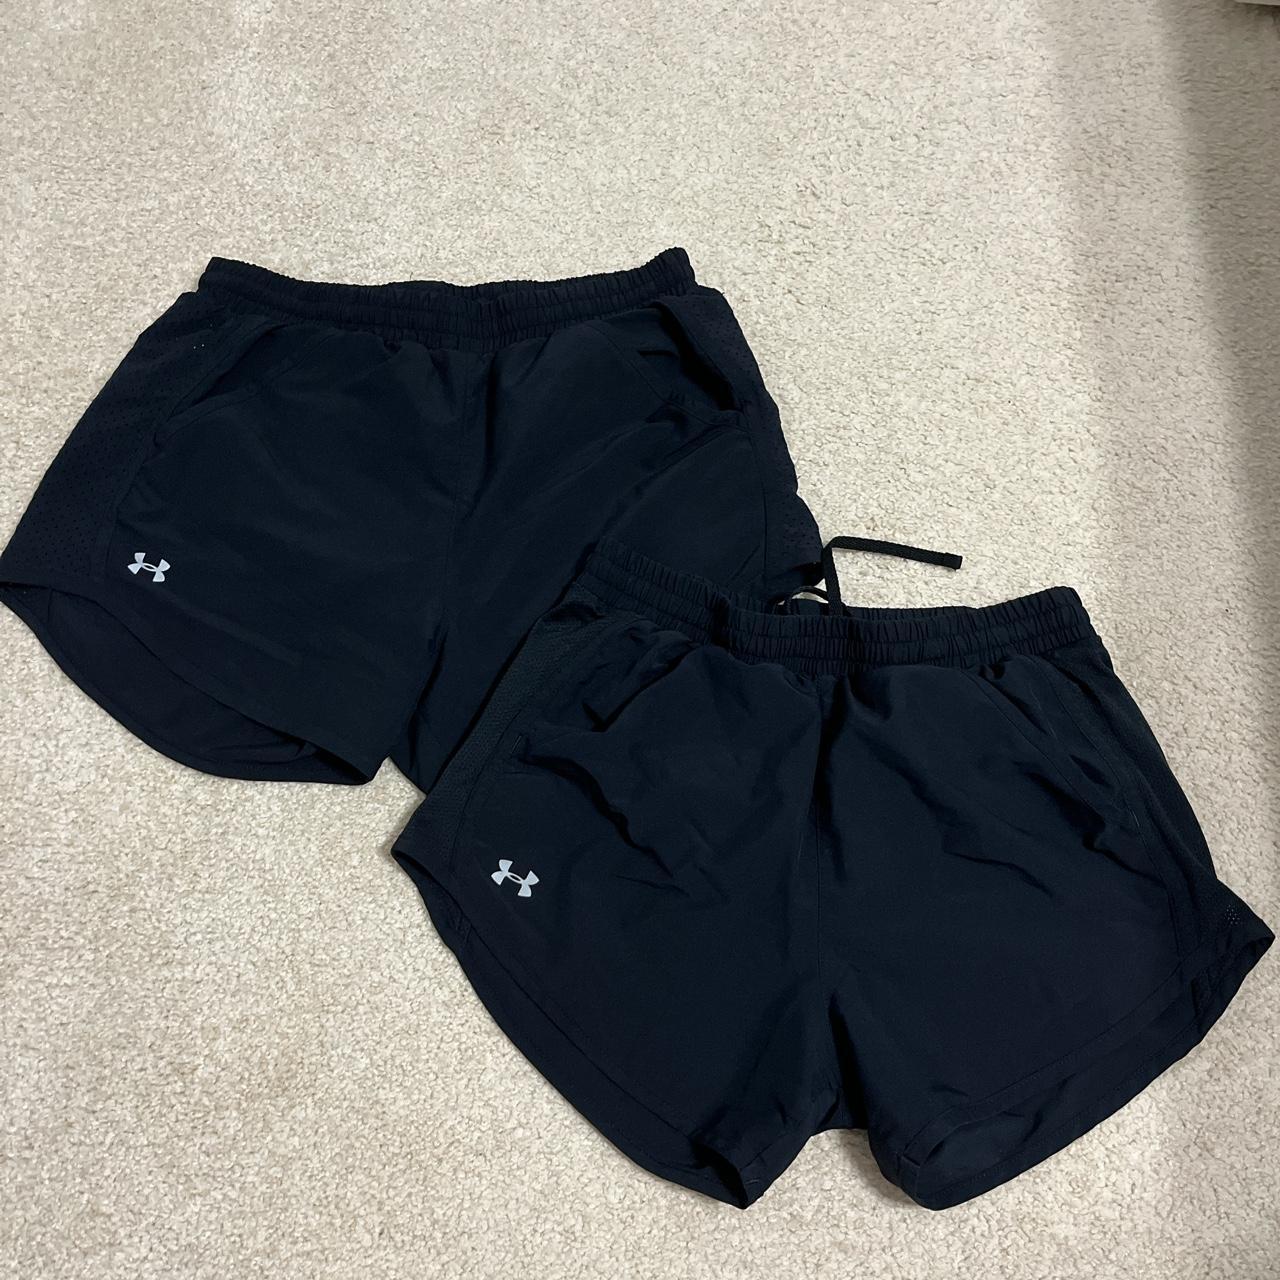 under armor black shorts , size xs, left shorts/grey